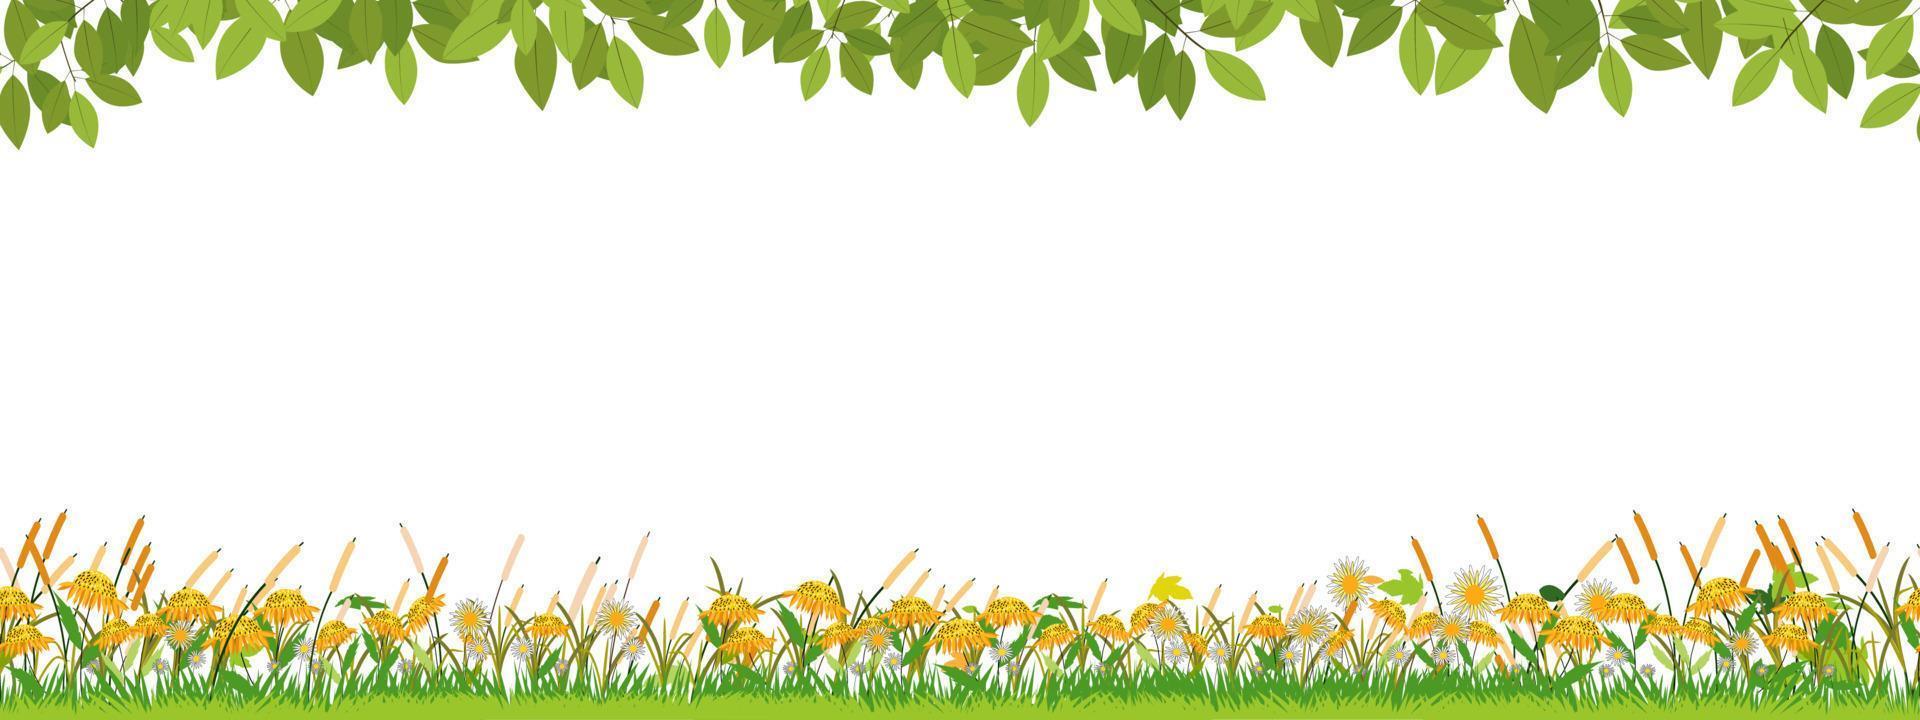 modèle sans couture paysage de champs verts de printemps sur fond blanc, vecteur large panorama sans fin belle nature rurale au printemps avec des tournesols sur l'herbe pour pâques, printemps, bannière d'été